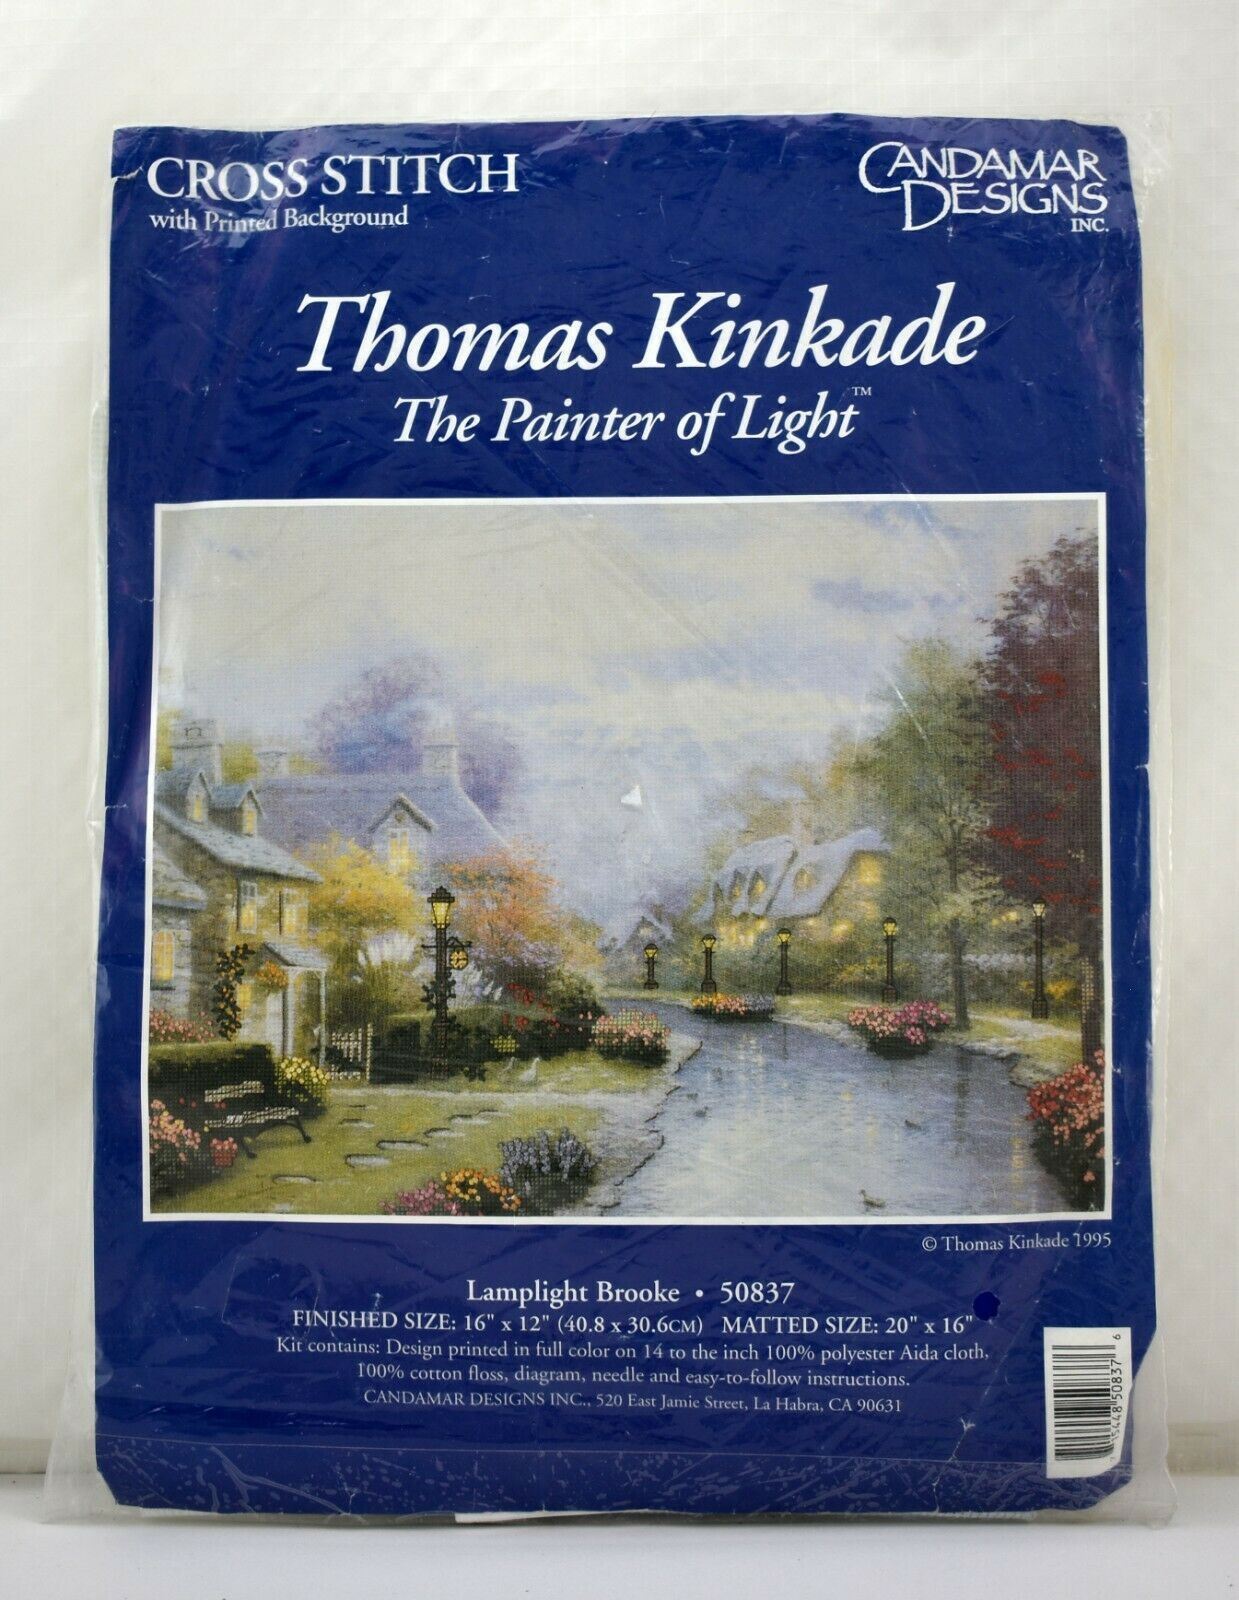 Candamar Designs Thomas Kinkade Lamplight Brooke Cross Stitch Kit - NEW Sealed - $18.95